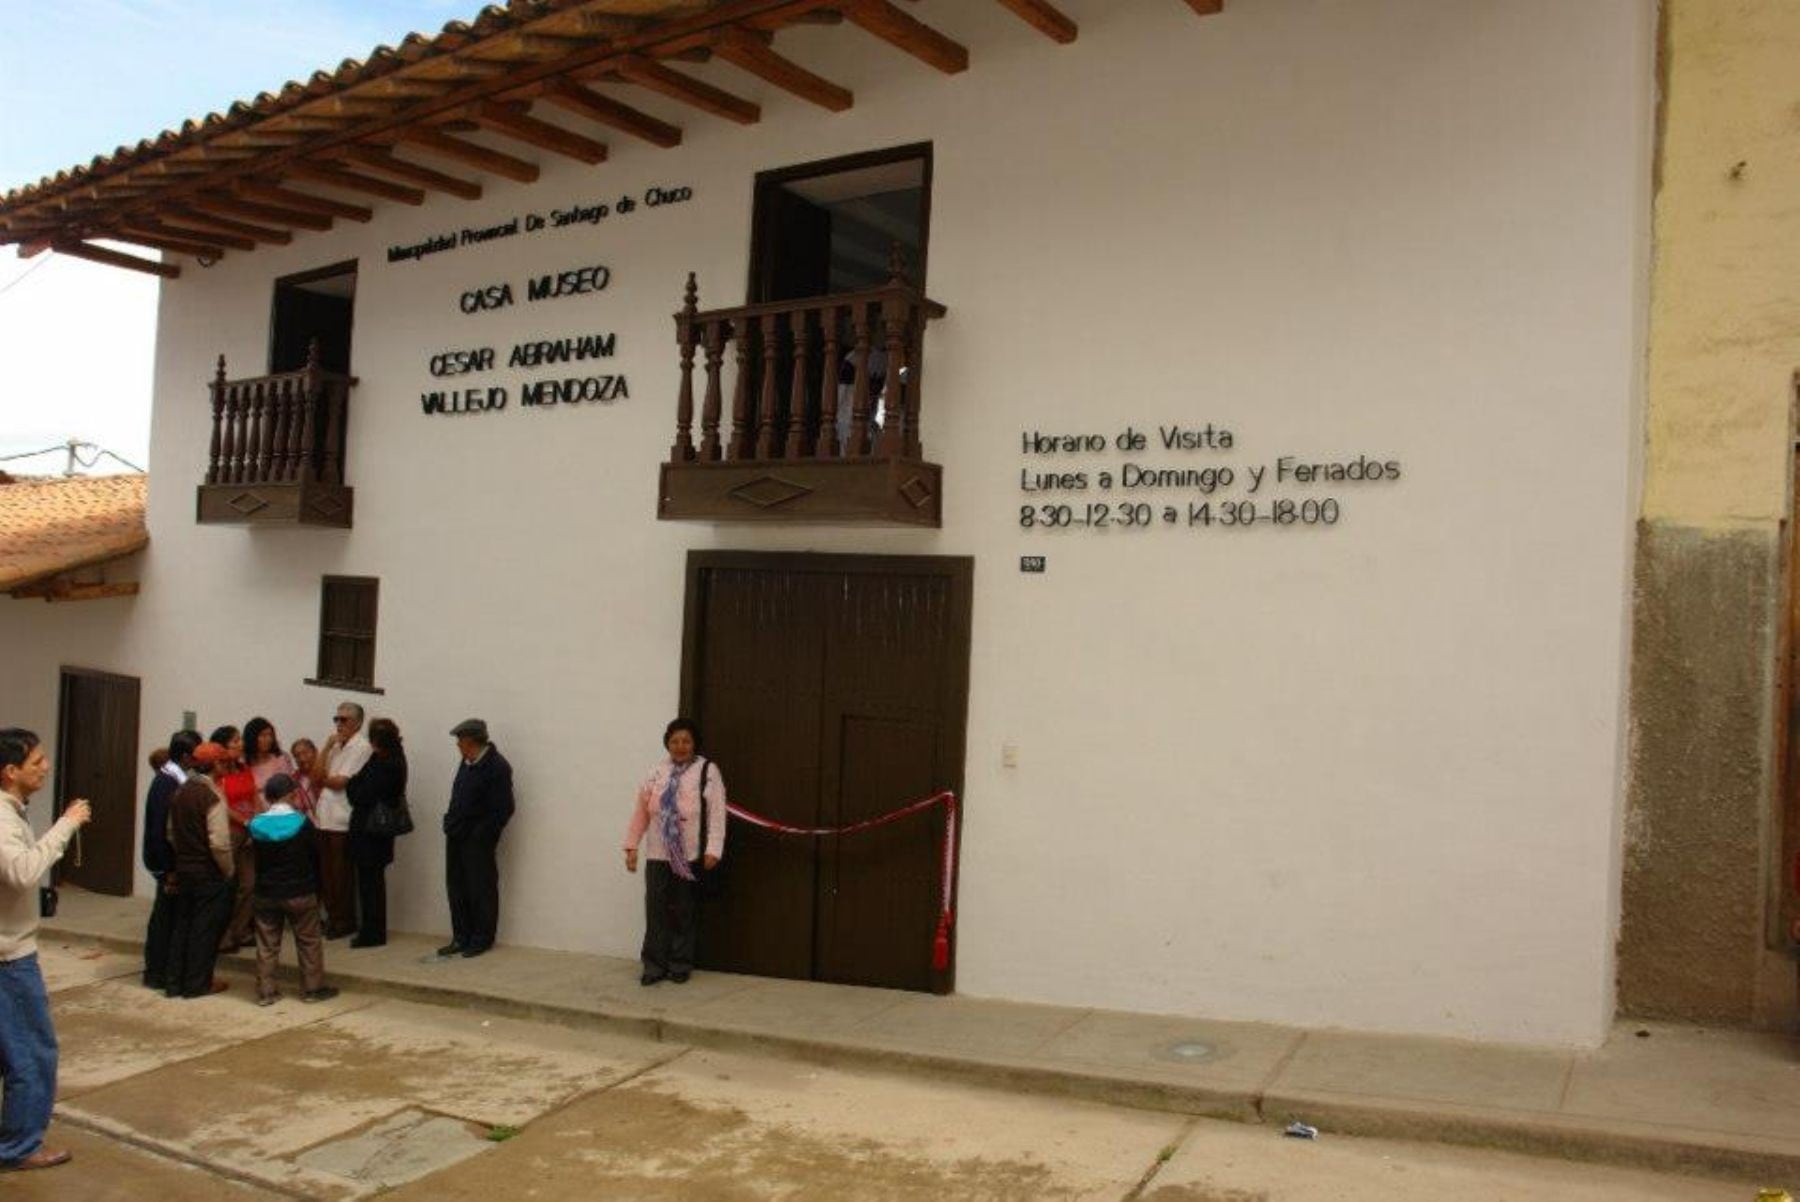 La casa museo está ubicada a dos cuadras de la plaza de armas. (Foto: Municipalidad de Santiago de Chuco)